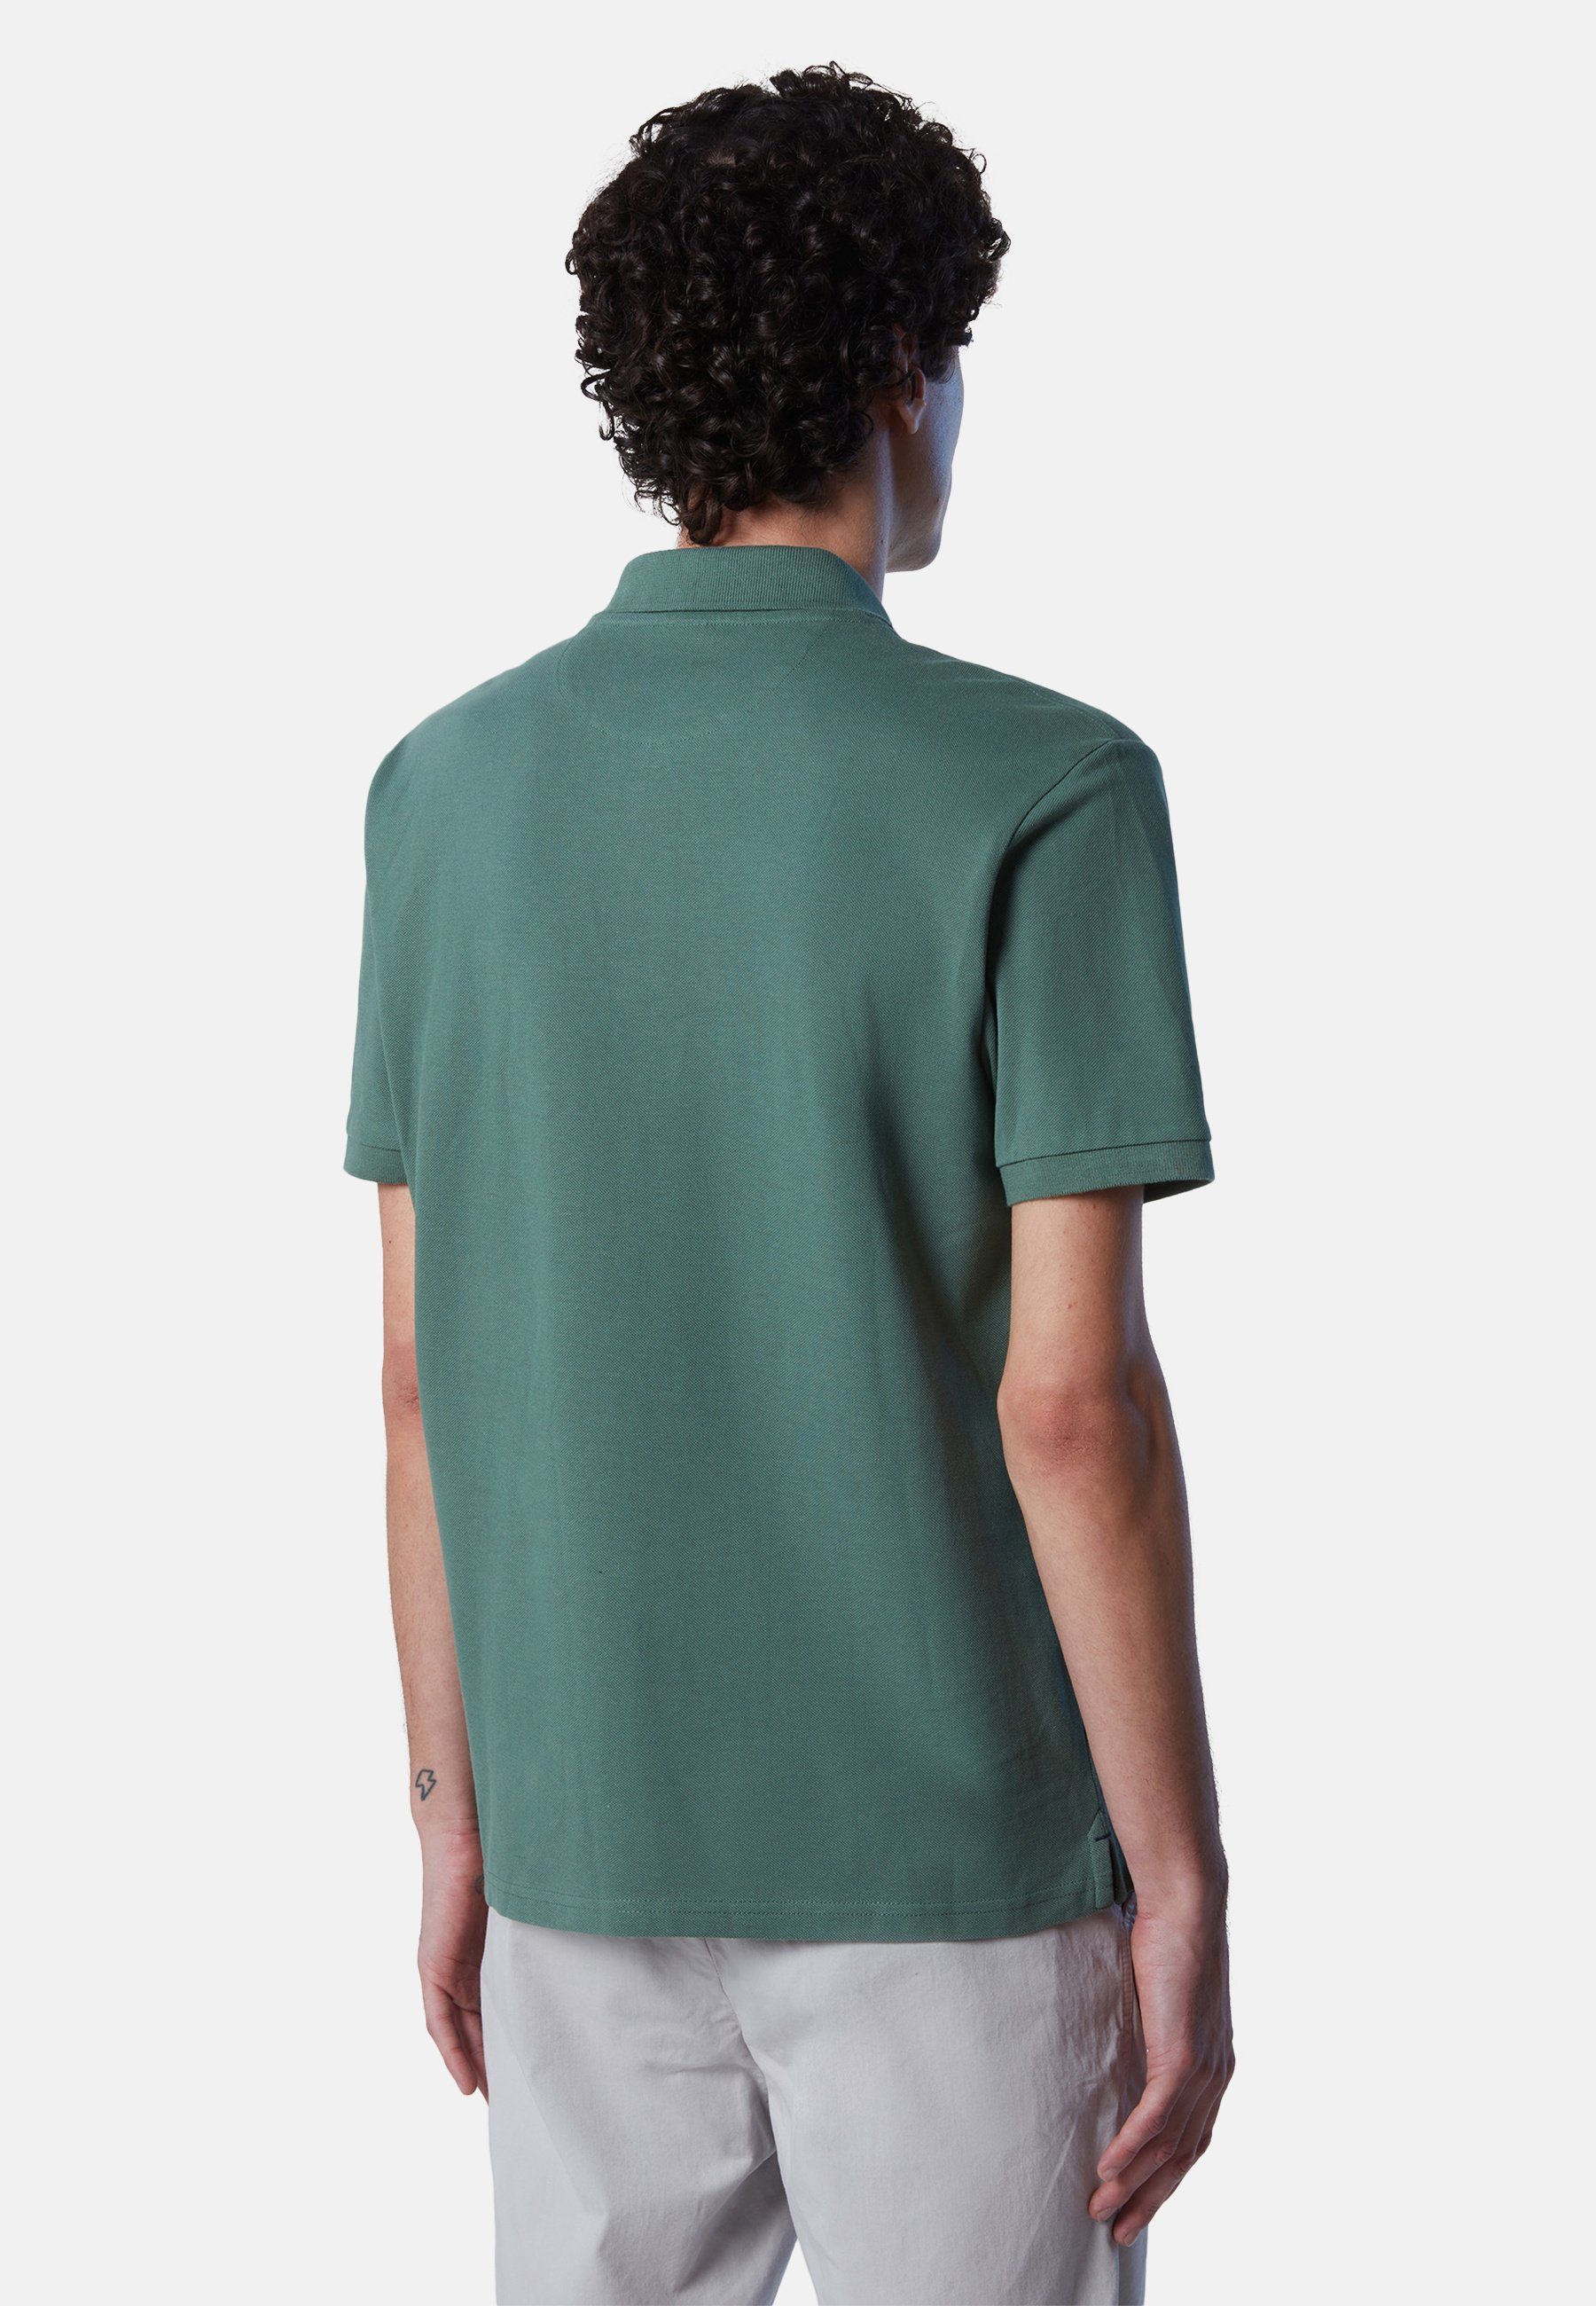 North Sails Poloshirt Poloshirt aus Bio-Baumwolle Design green mit klassischem